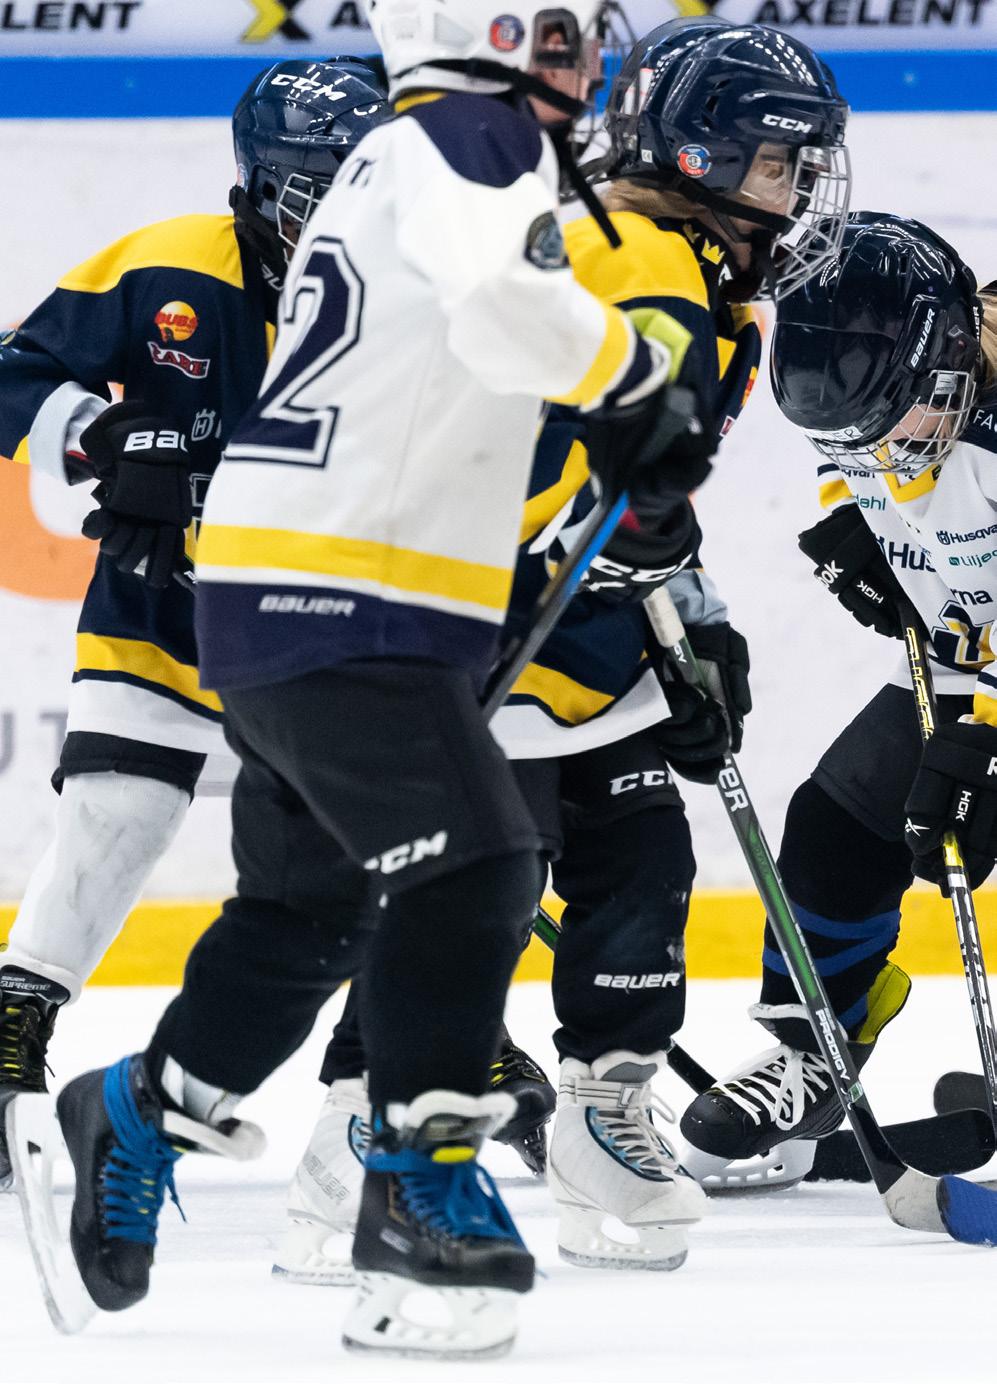 SAMHÄLLSENGAGEMANG GRATIS HOCKEYSKOLA HV71 och HC Dalen vill att fler barn ska få möjligheten att spela hockey samt öka mångfalden i klubbarna.